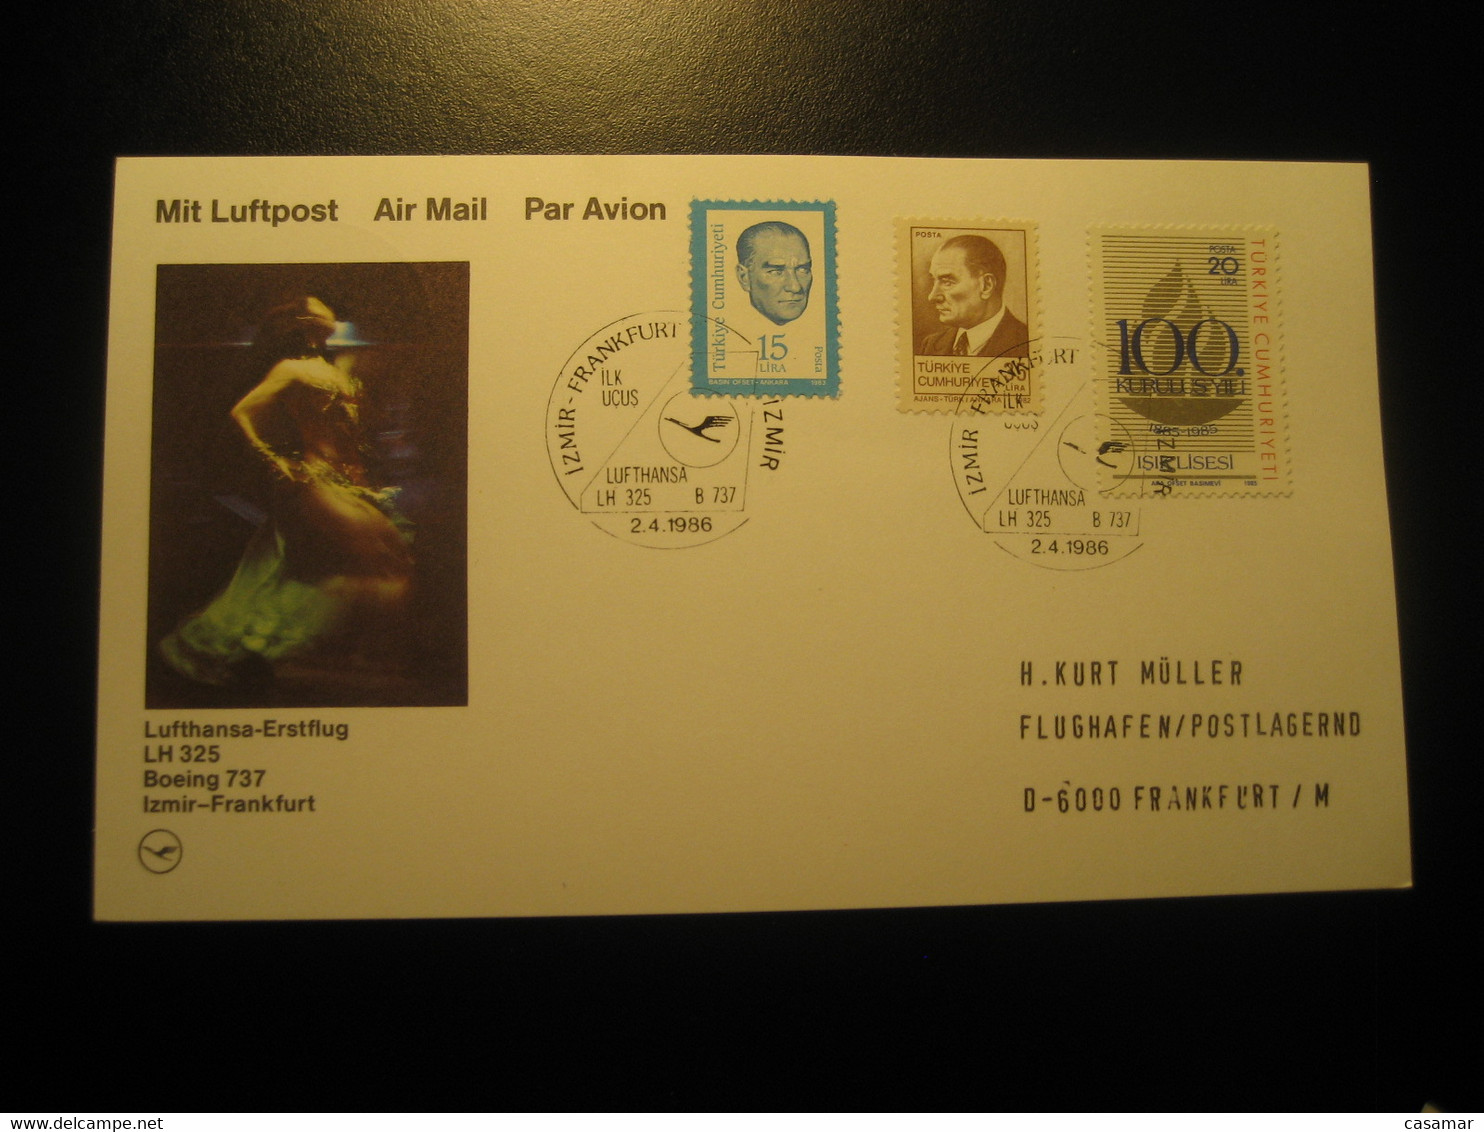 Izmir Frankfurt 1986 Lufthansa Airline Boeing 737 First Flight 3 Stamp Cancel Card Turkey Germany - Luchtpost